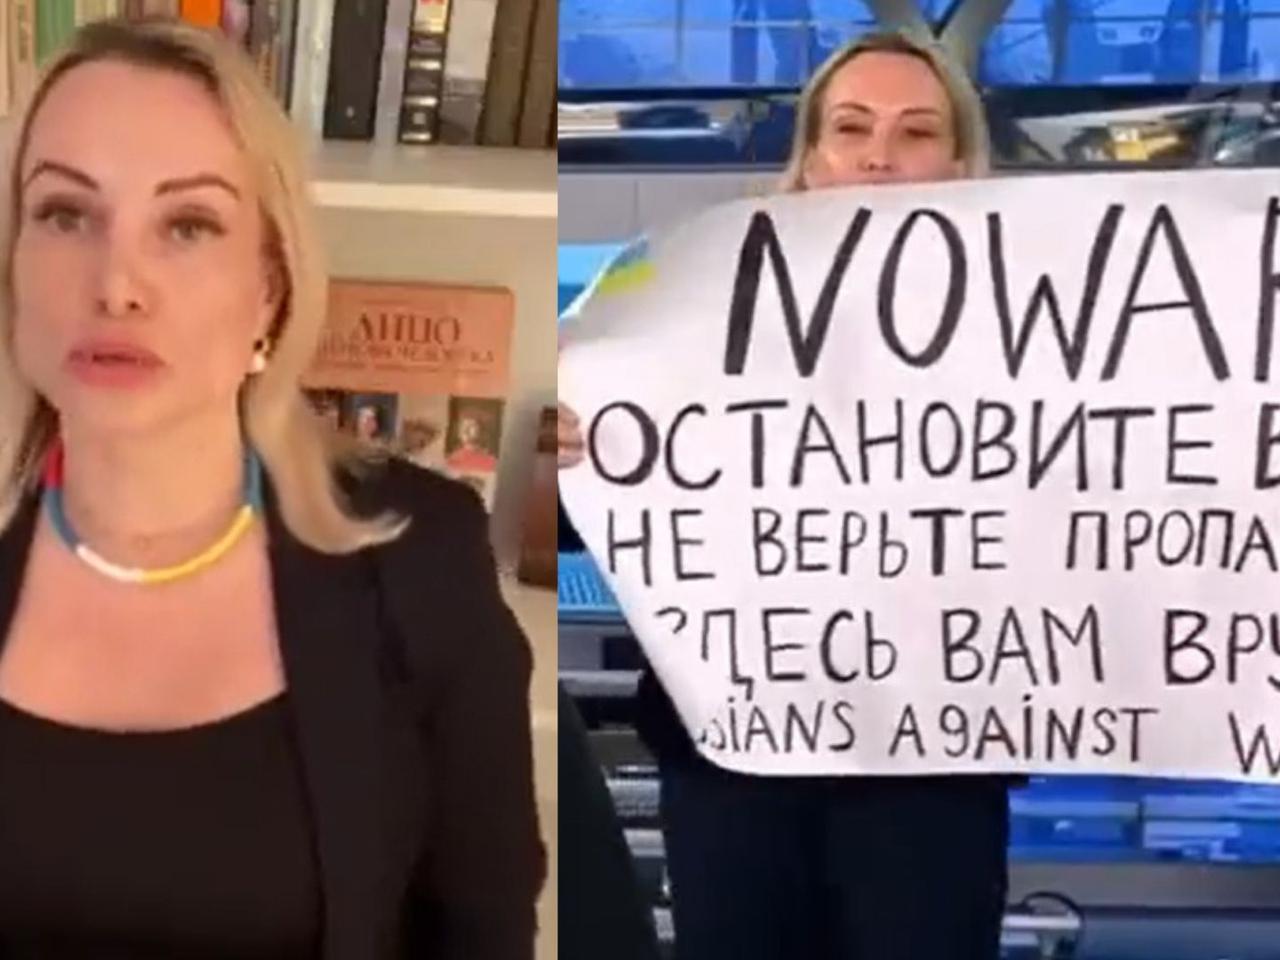 Marina Ovsyannikova - kim jest Rosjanka, która pokazała antywojenny baner w programie na żywo?